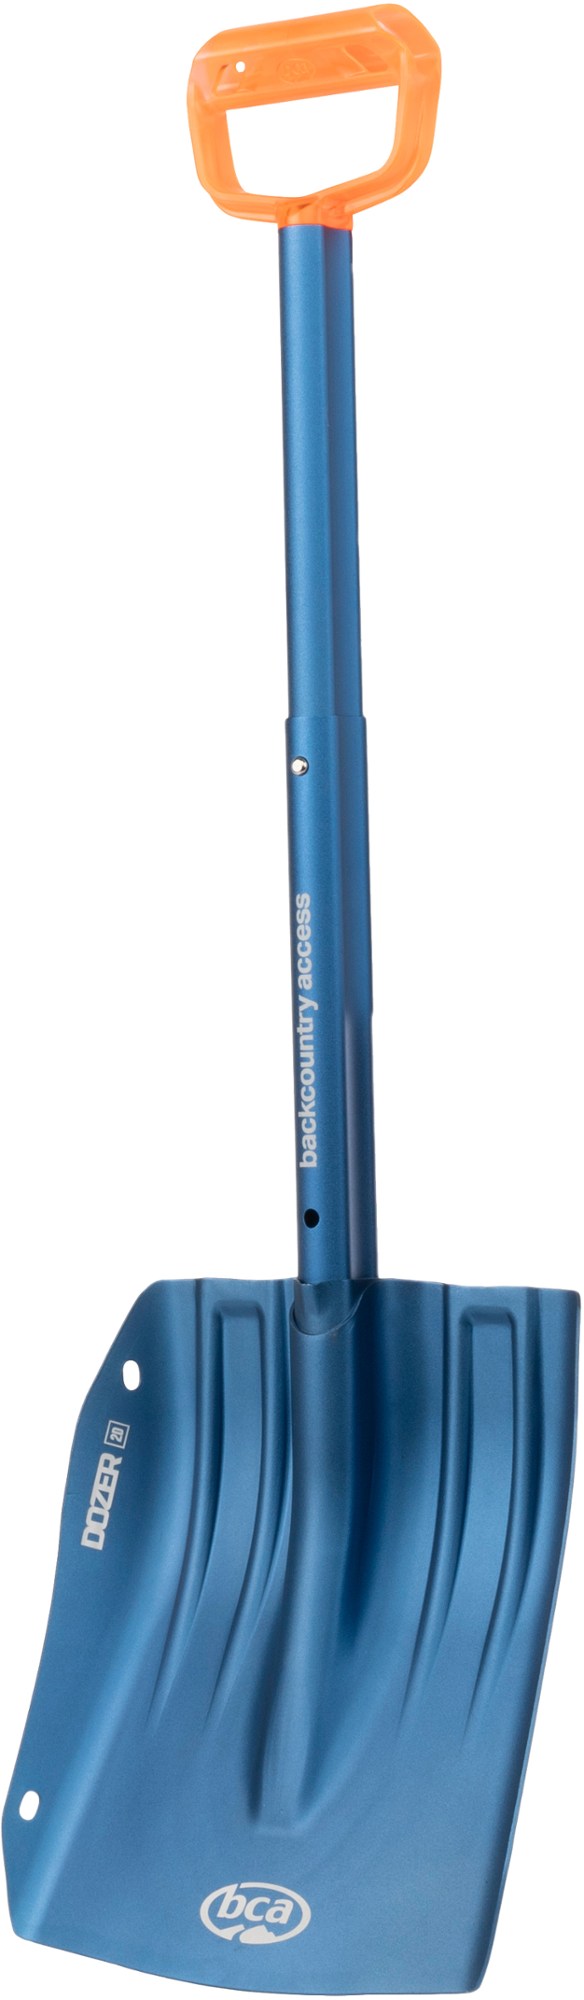 Лавинная лопата Dozer 2D Backcountry Access, синий